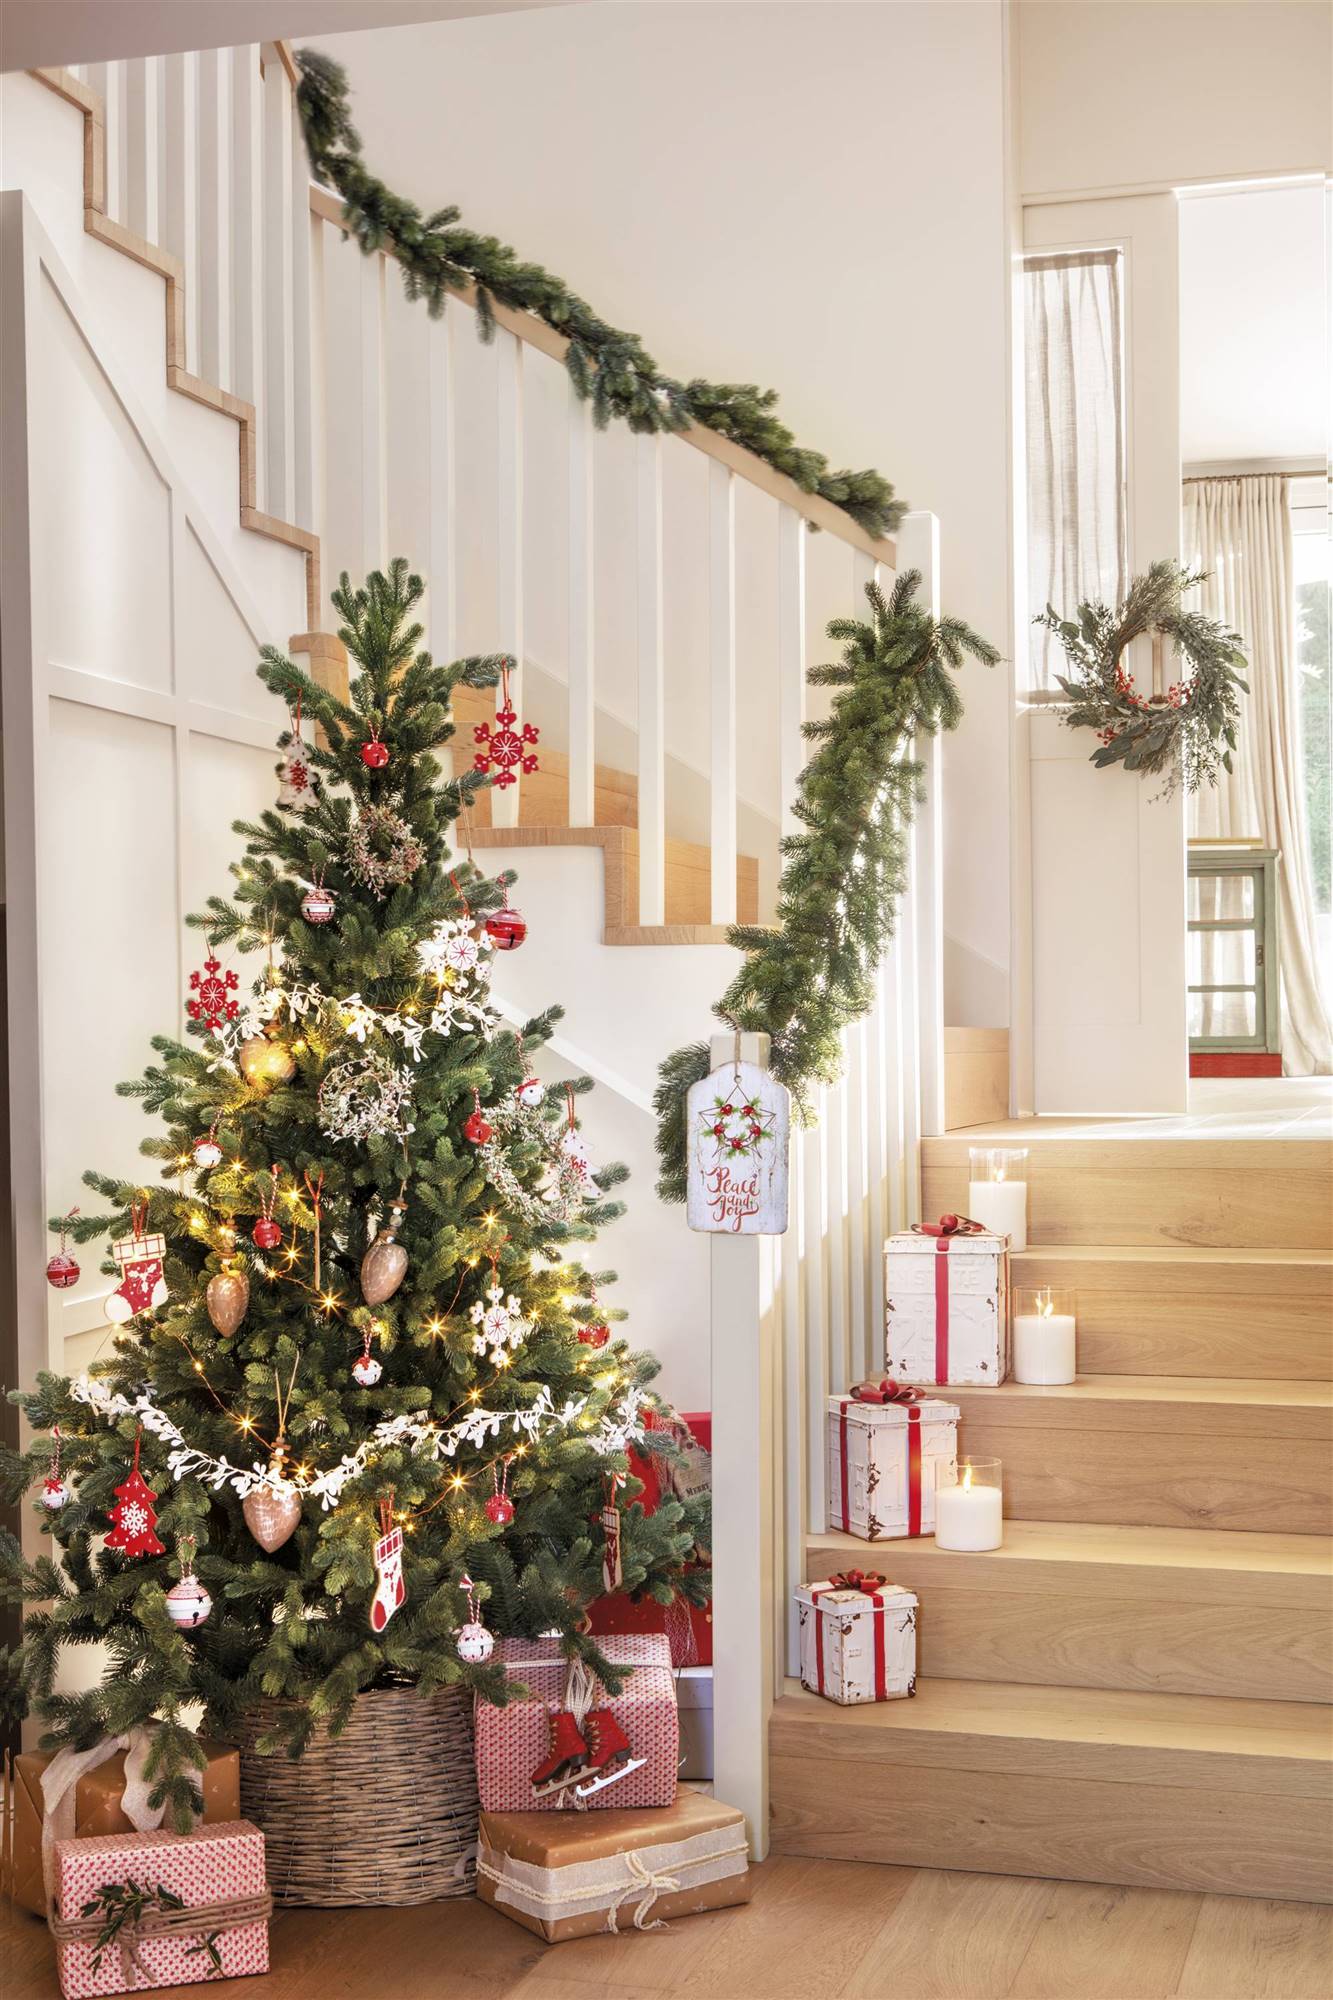 Escaleras decoradas por Navidad.